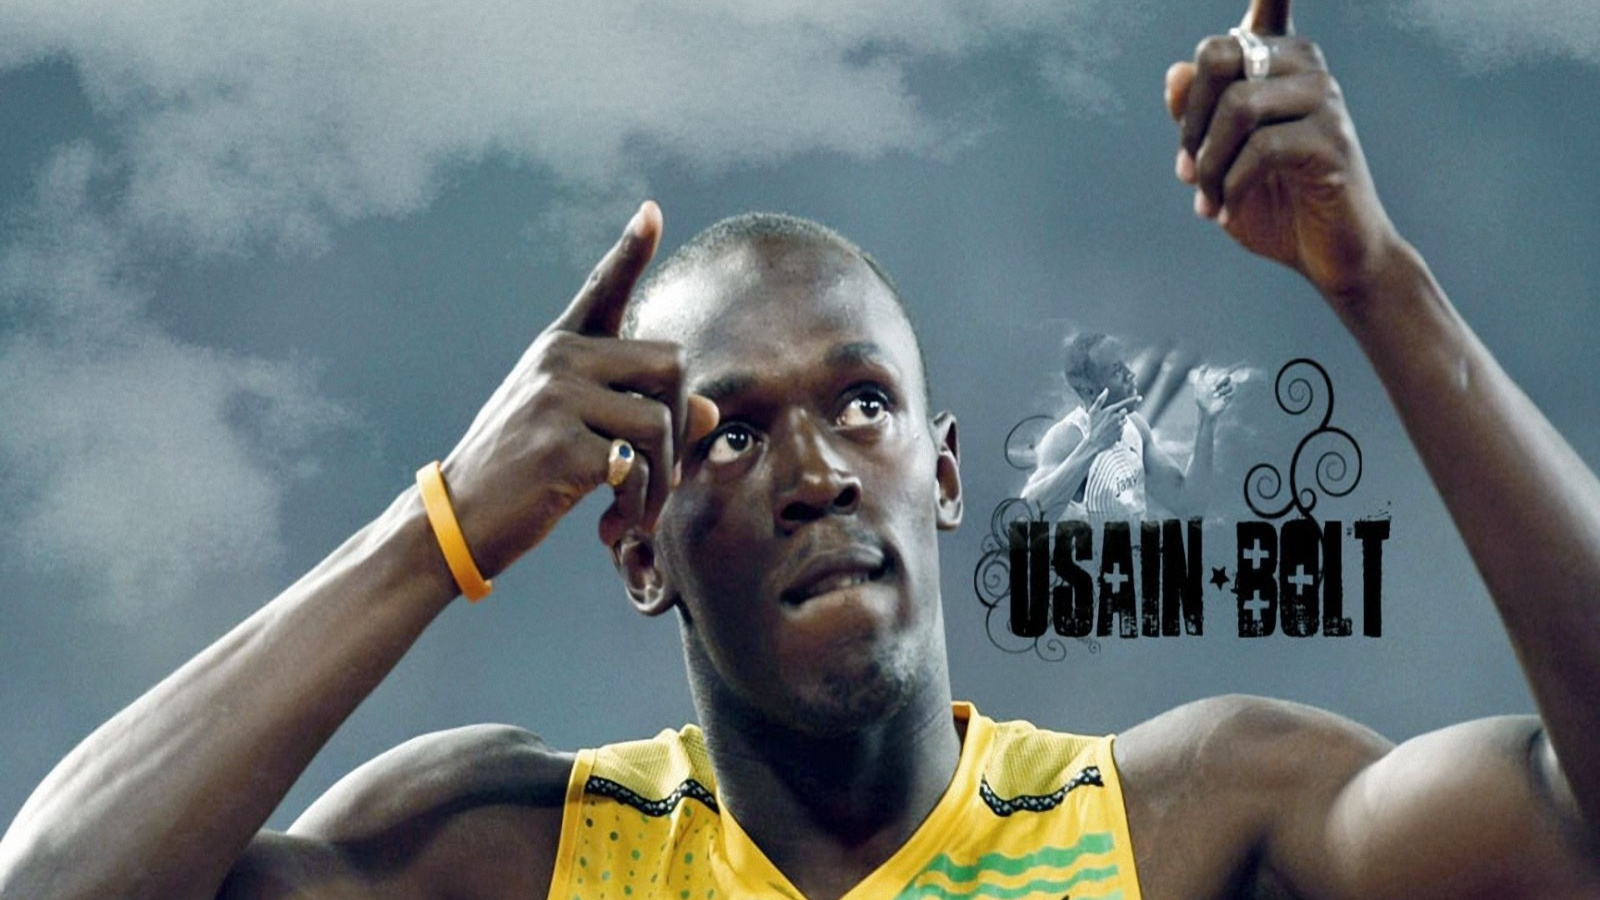 Usain Bolt , HD Wallpaper & Backgrounds